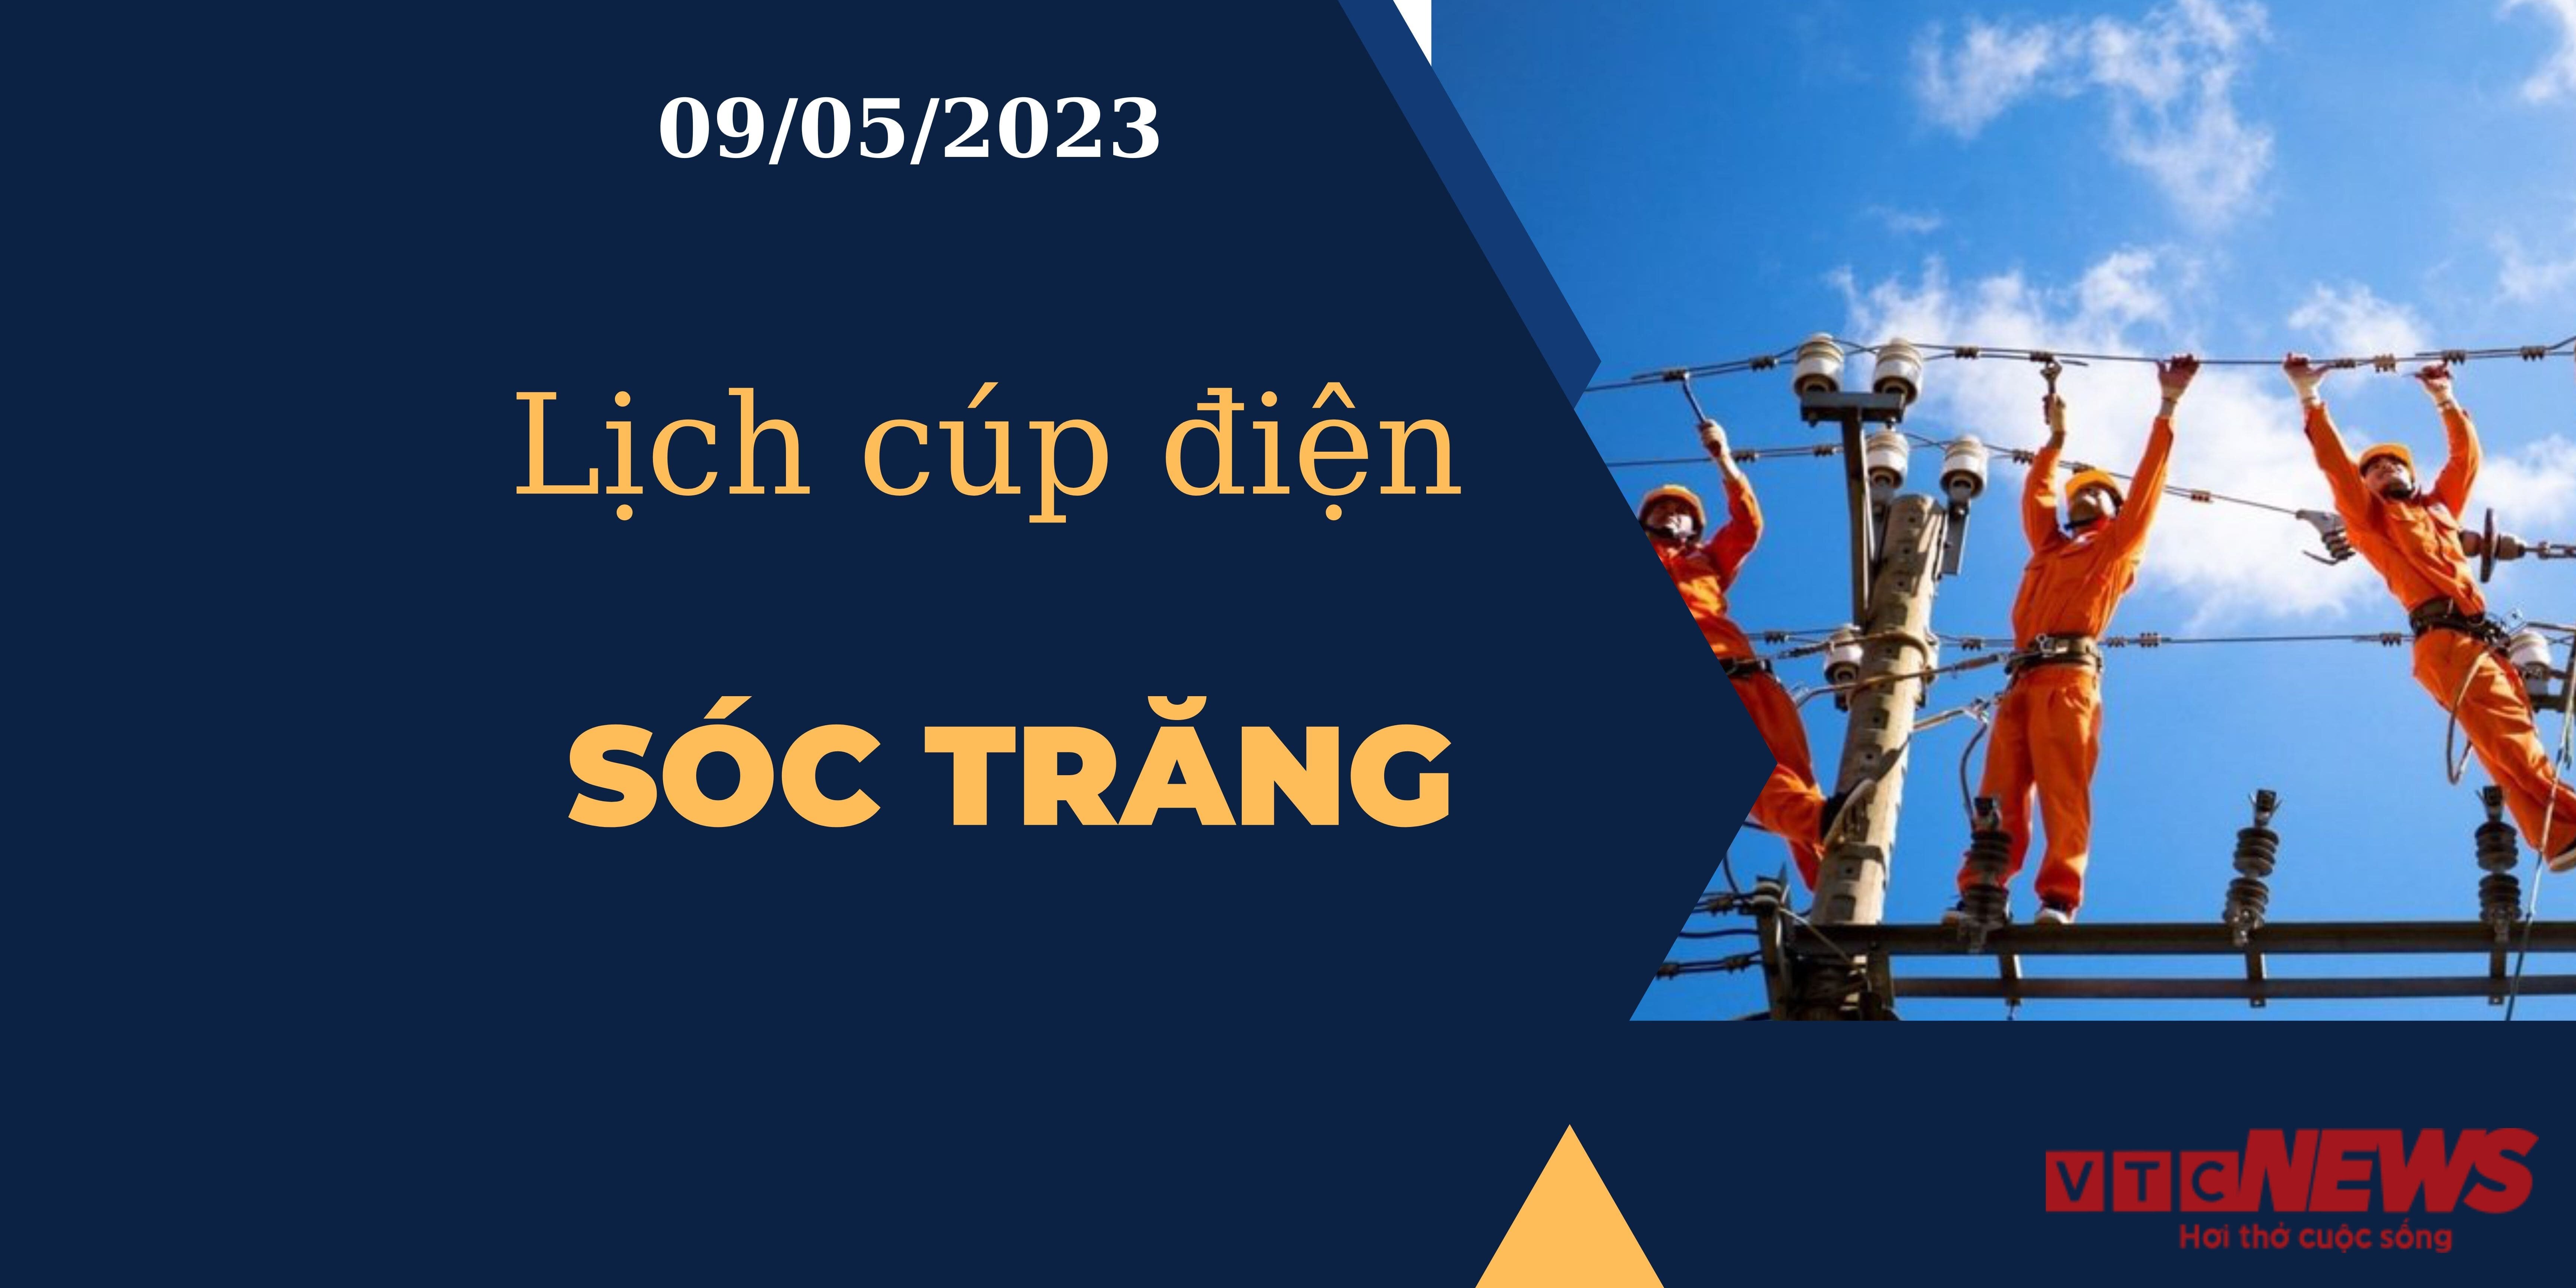 Lịch cúp điện hôm nay tại  Sóc Trăng ngày 09/05/2023 - 1